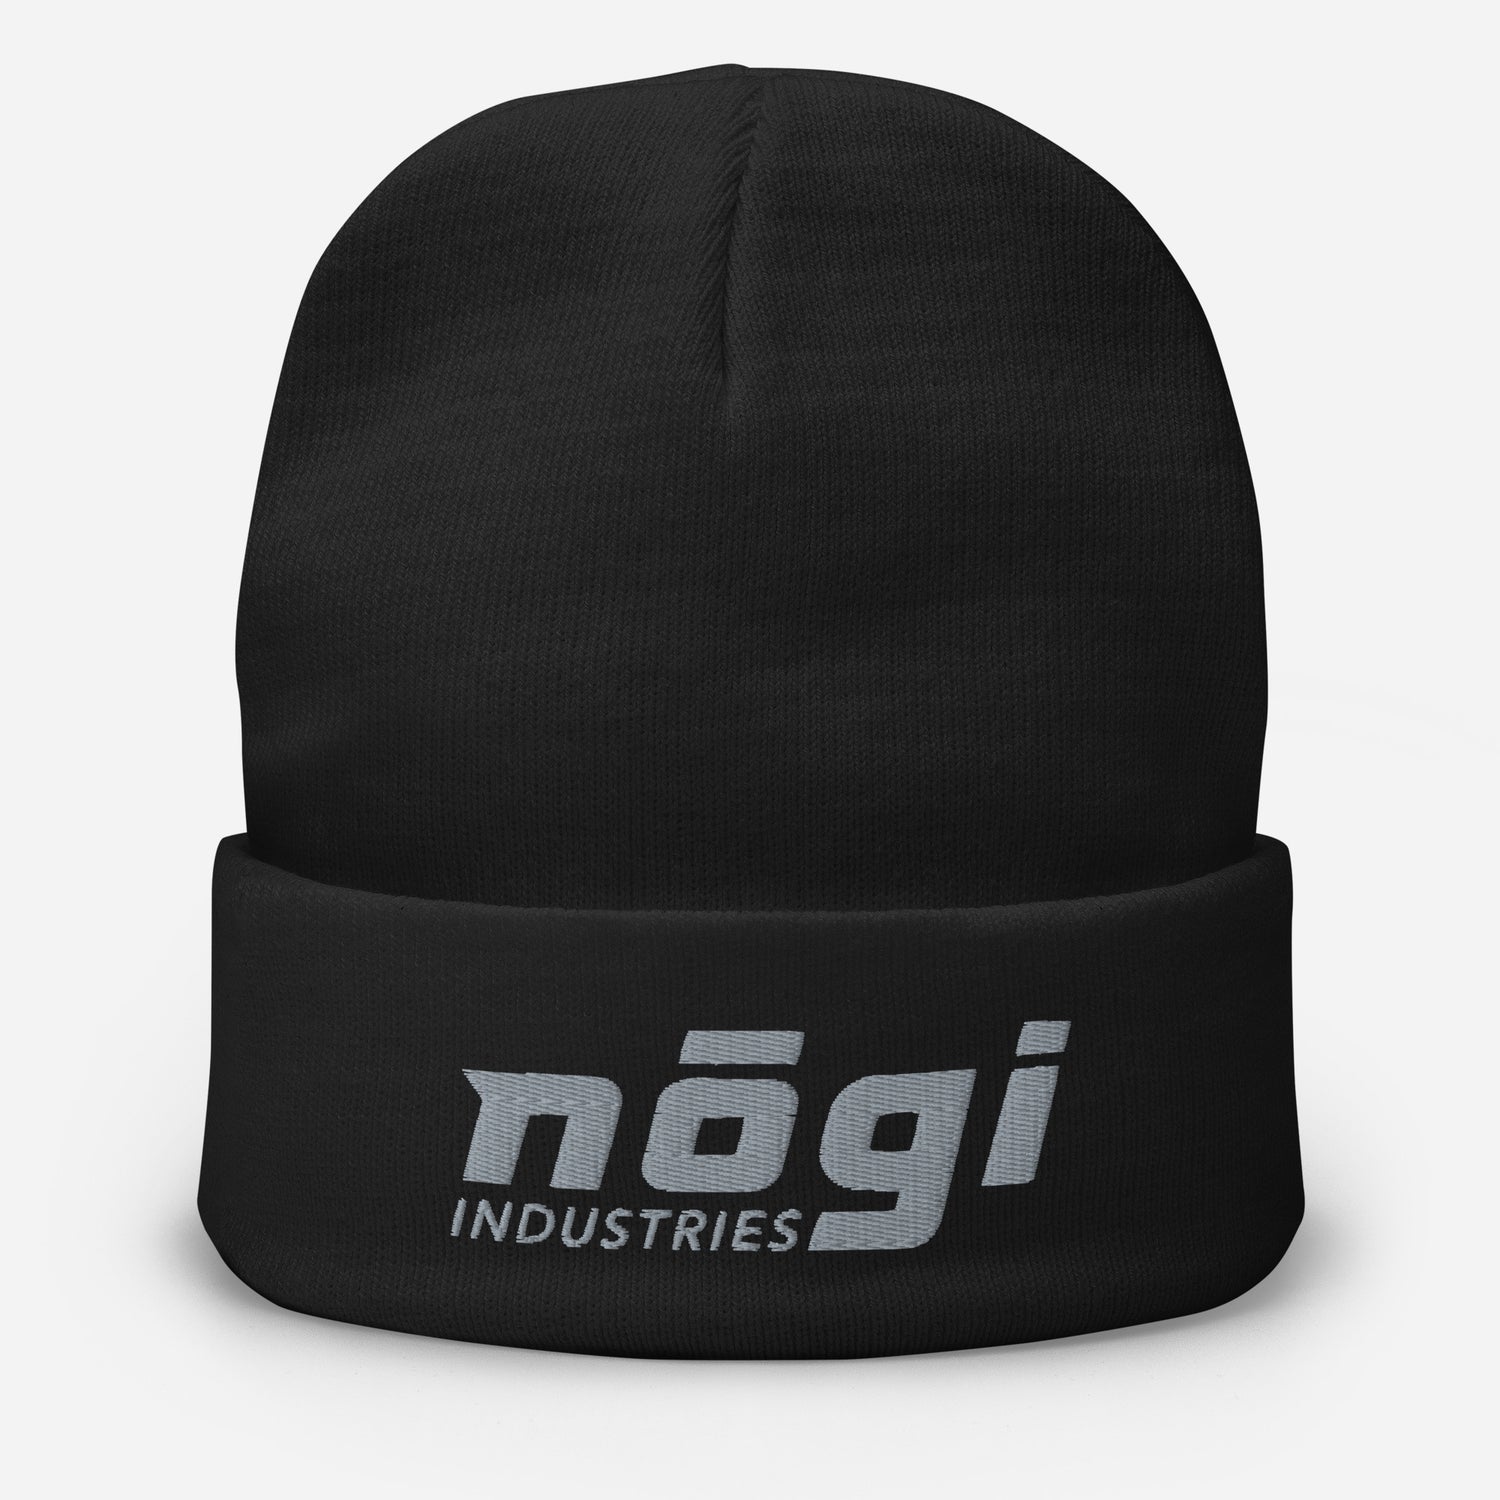 Nogi Industries のパフロゴ付き刺繍ビーニー (ブラック & グレー)